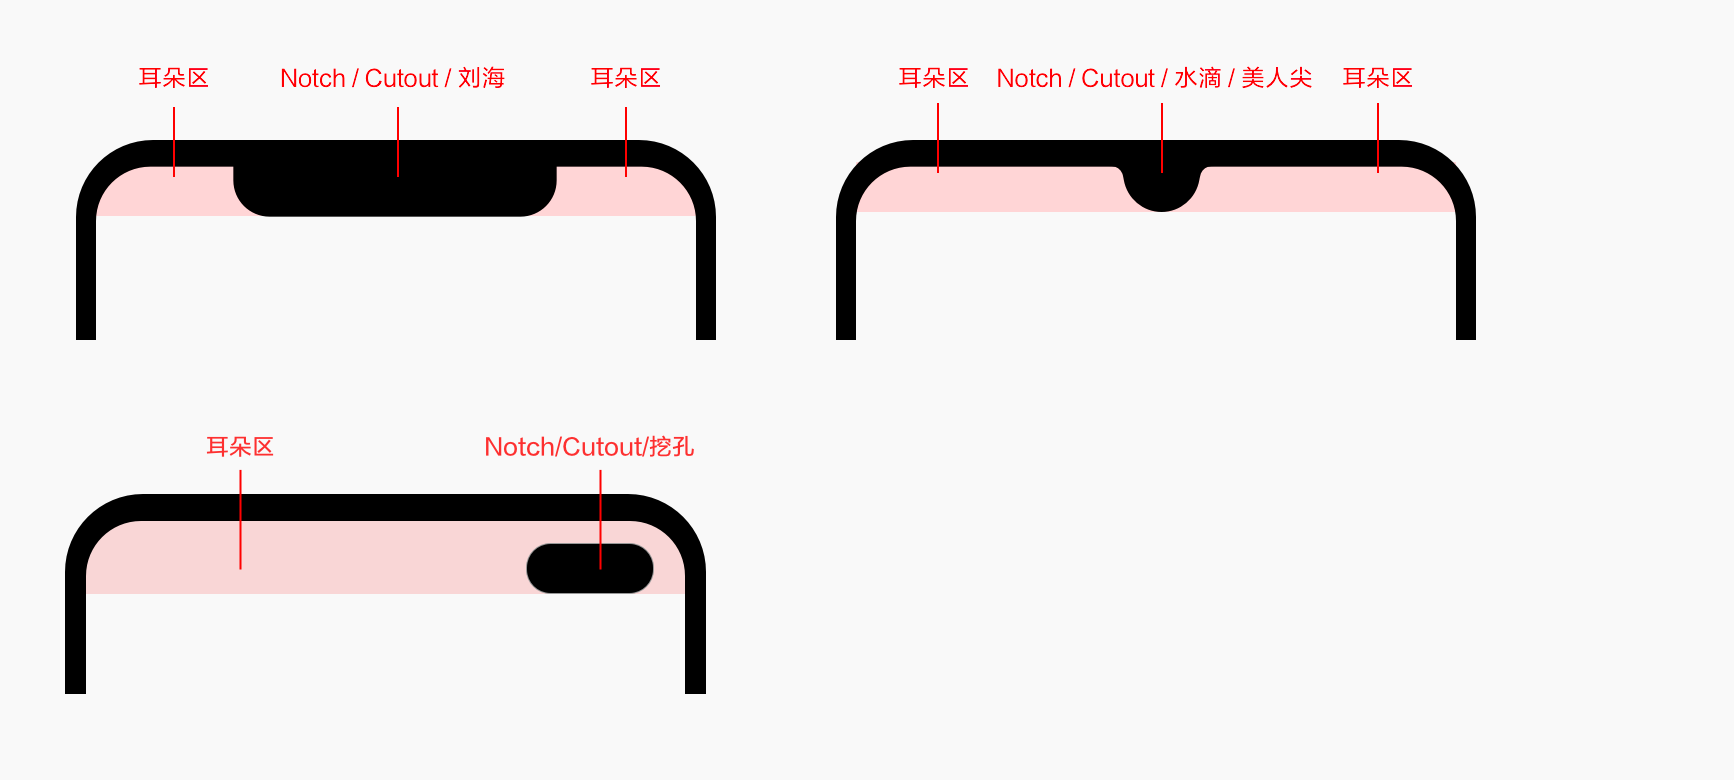 小米开发平台 刘海屏、水滴屏、挖孔屏 Android P/Q 适配